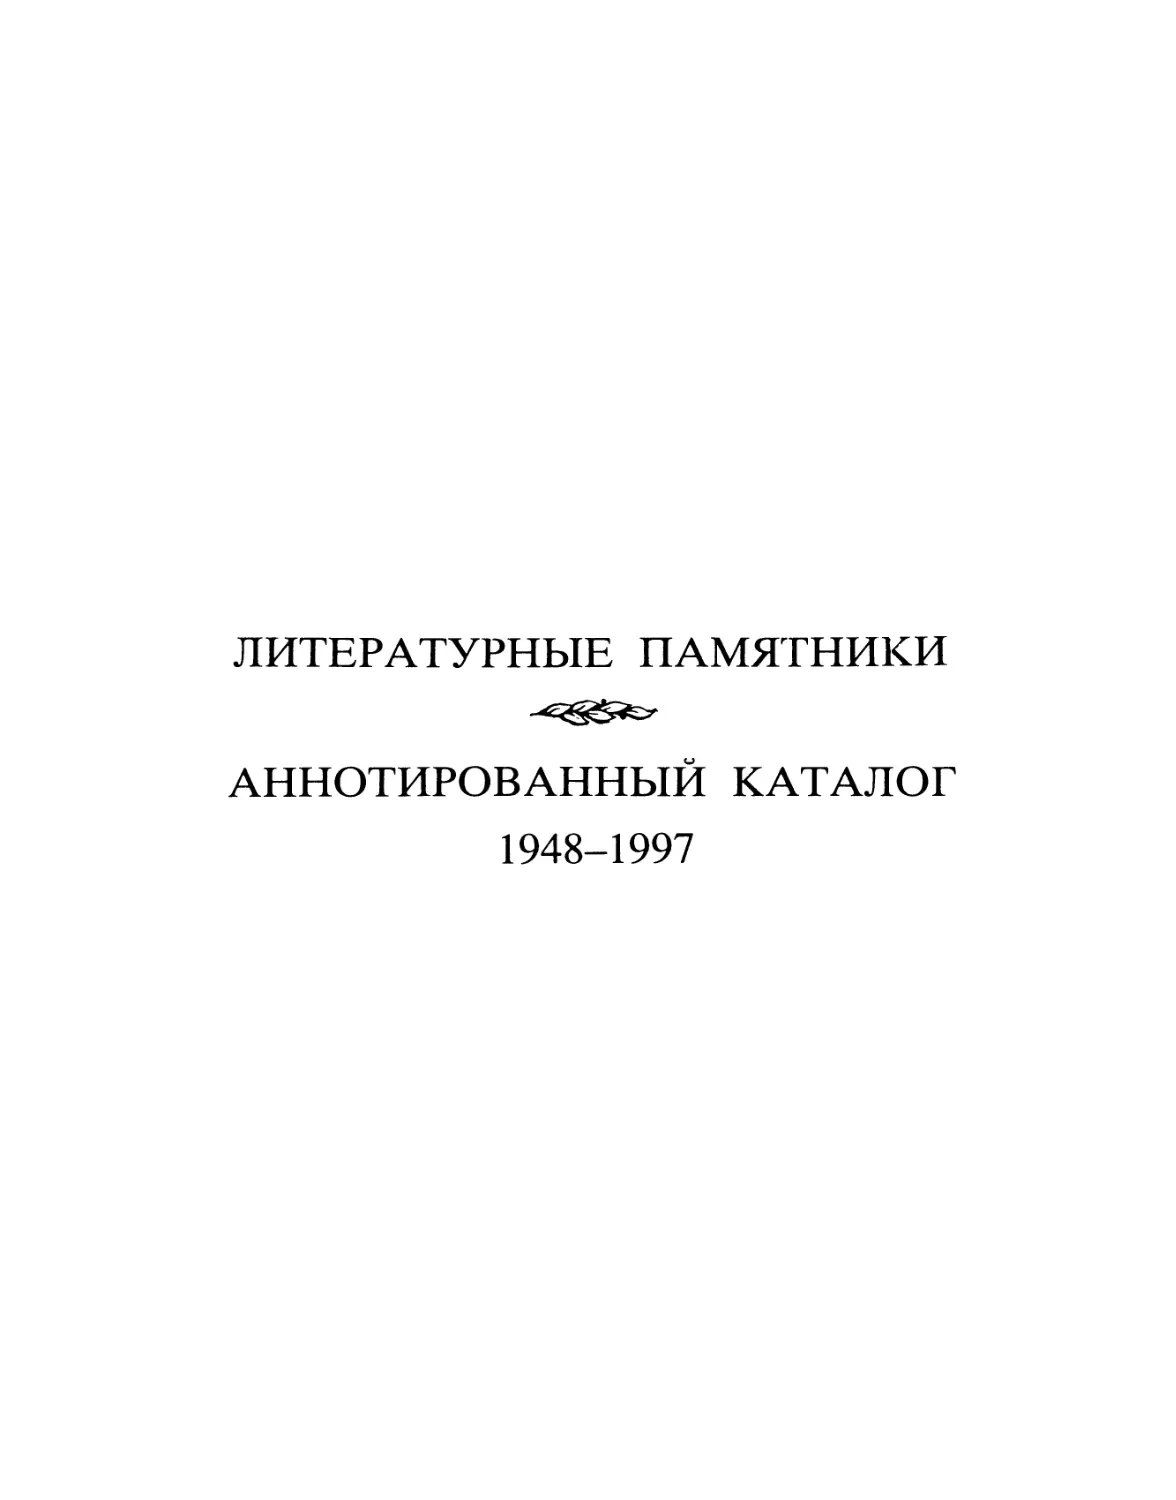 Литературные памятники. 1948-1997. Аннотированный каталог